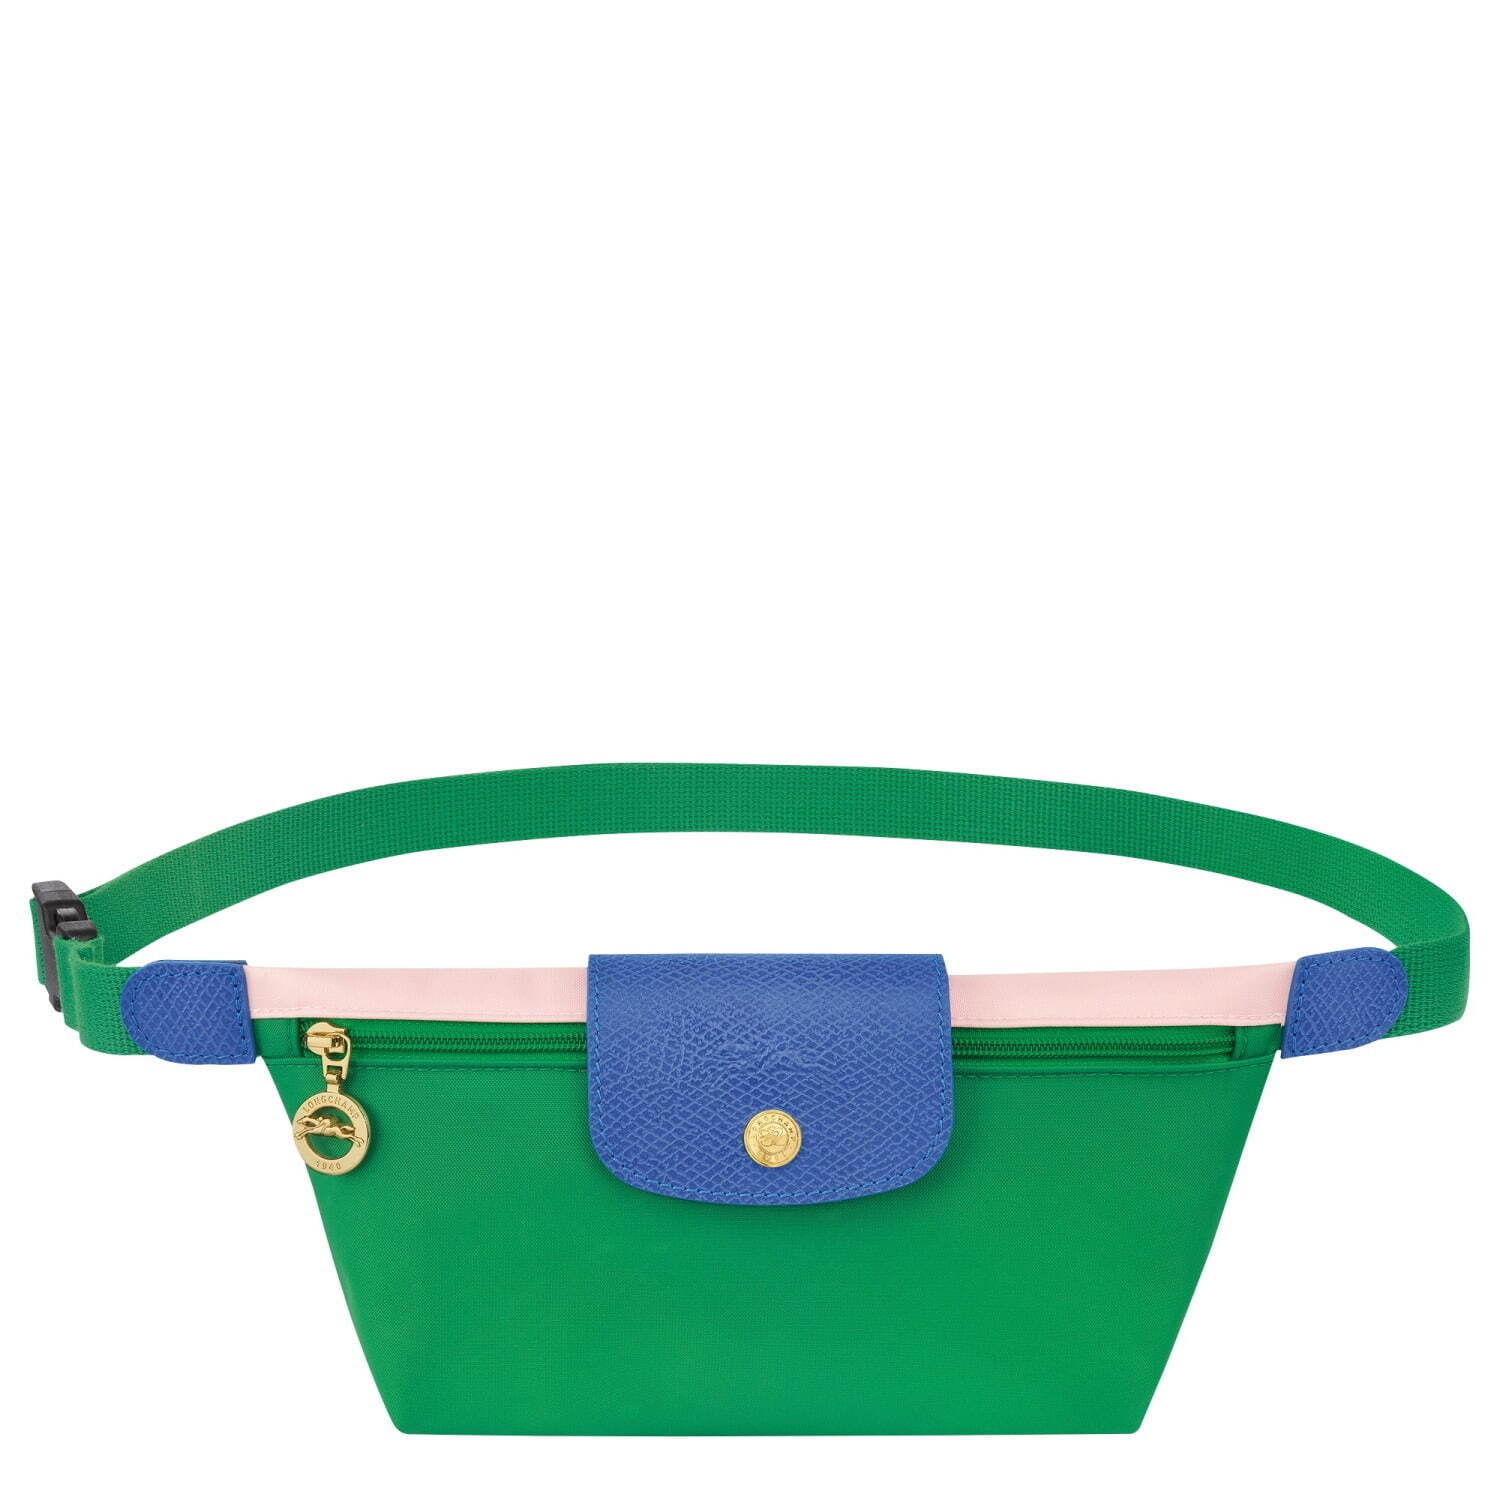 ロンシャンの新作バッグ「ル プリアージュ リプレイ」鮮やかな“カラー 